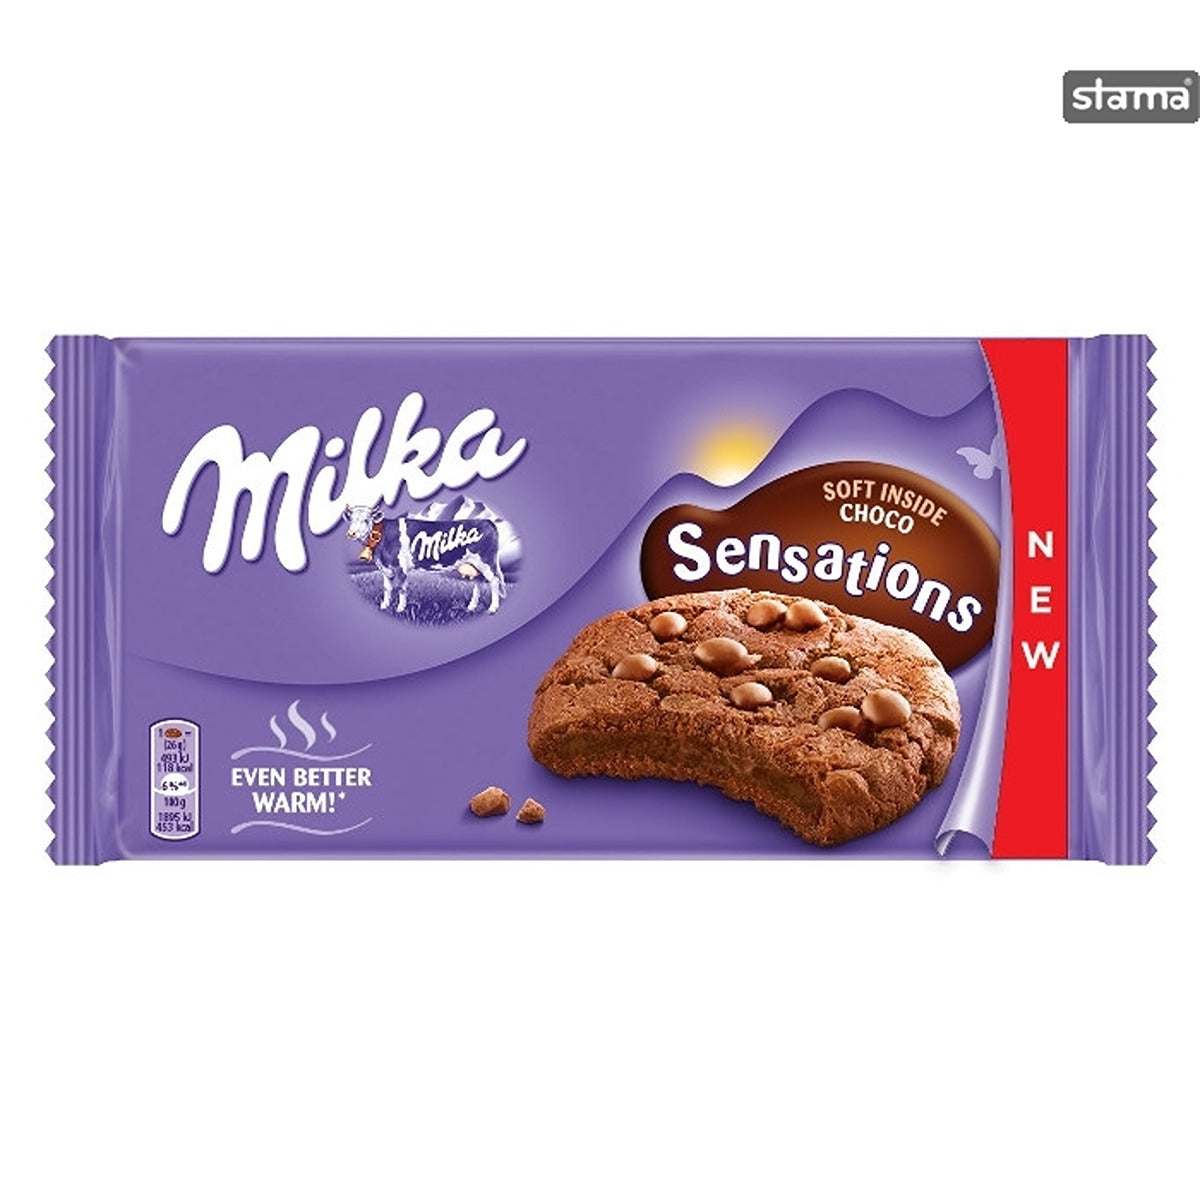 A bar of Milka - Sensations Choco - 156g.